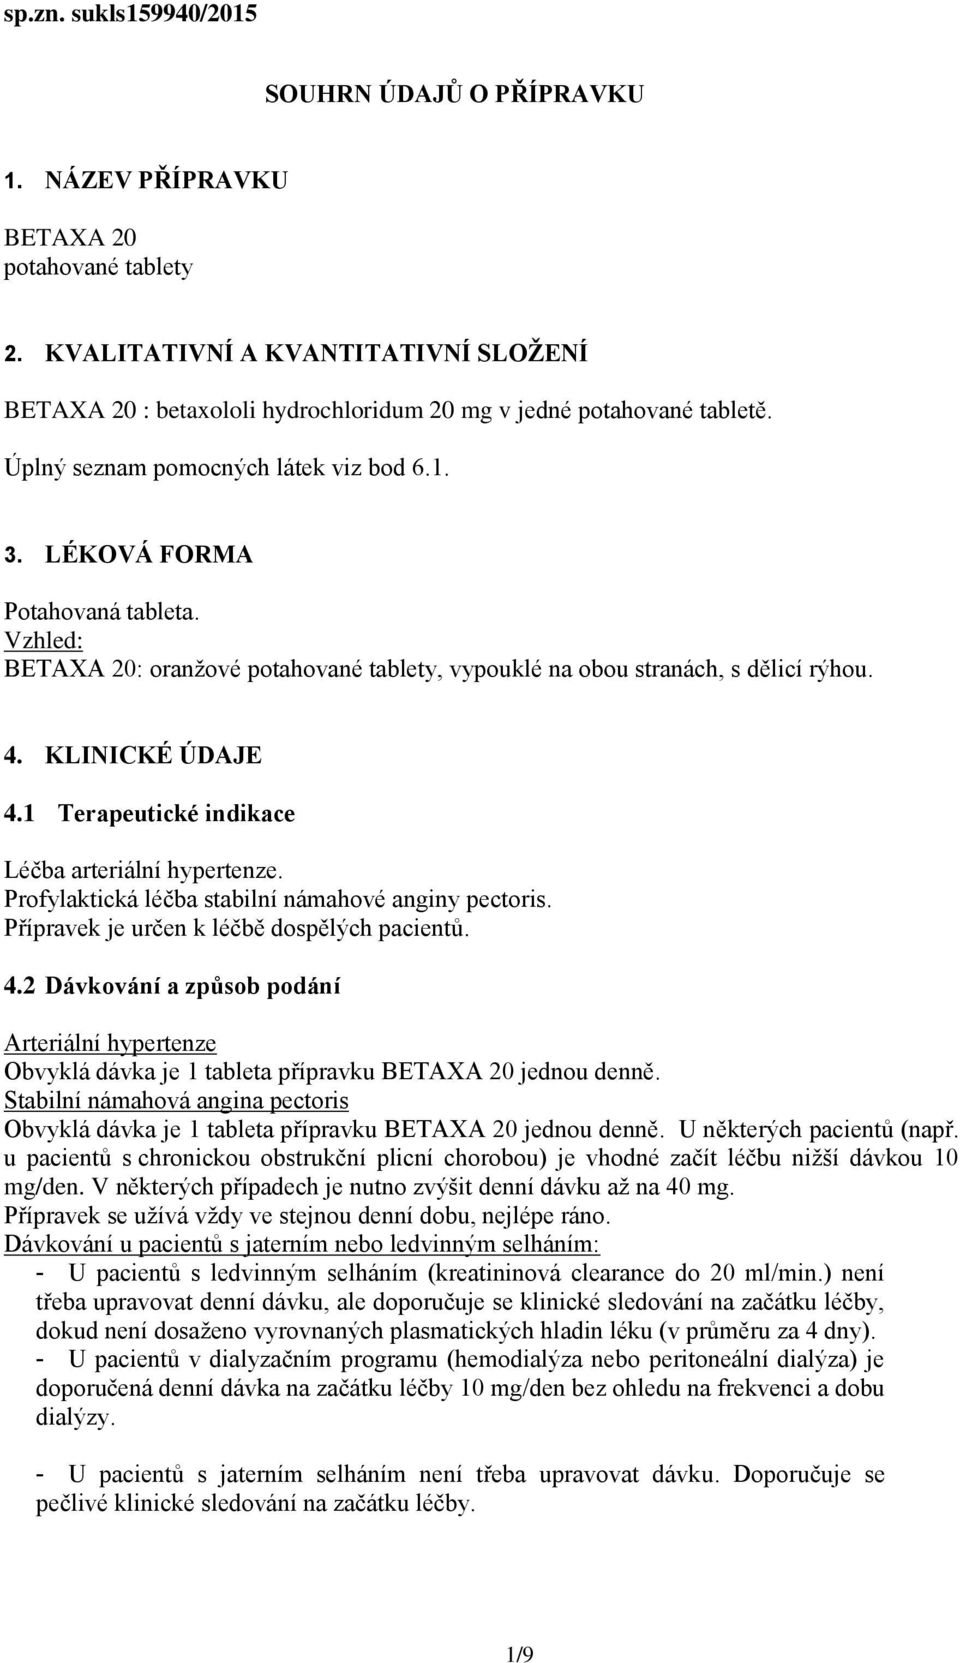 Vzhled: BETAXA 20: oranžové potahované tablety, vypouklé na obou stranách, s dělicí rýhou. 4. KLINICKÉ ÚDAJE 4.1 Terapeutické indikace Léčba arteriální hypertenze.